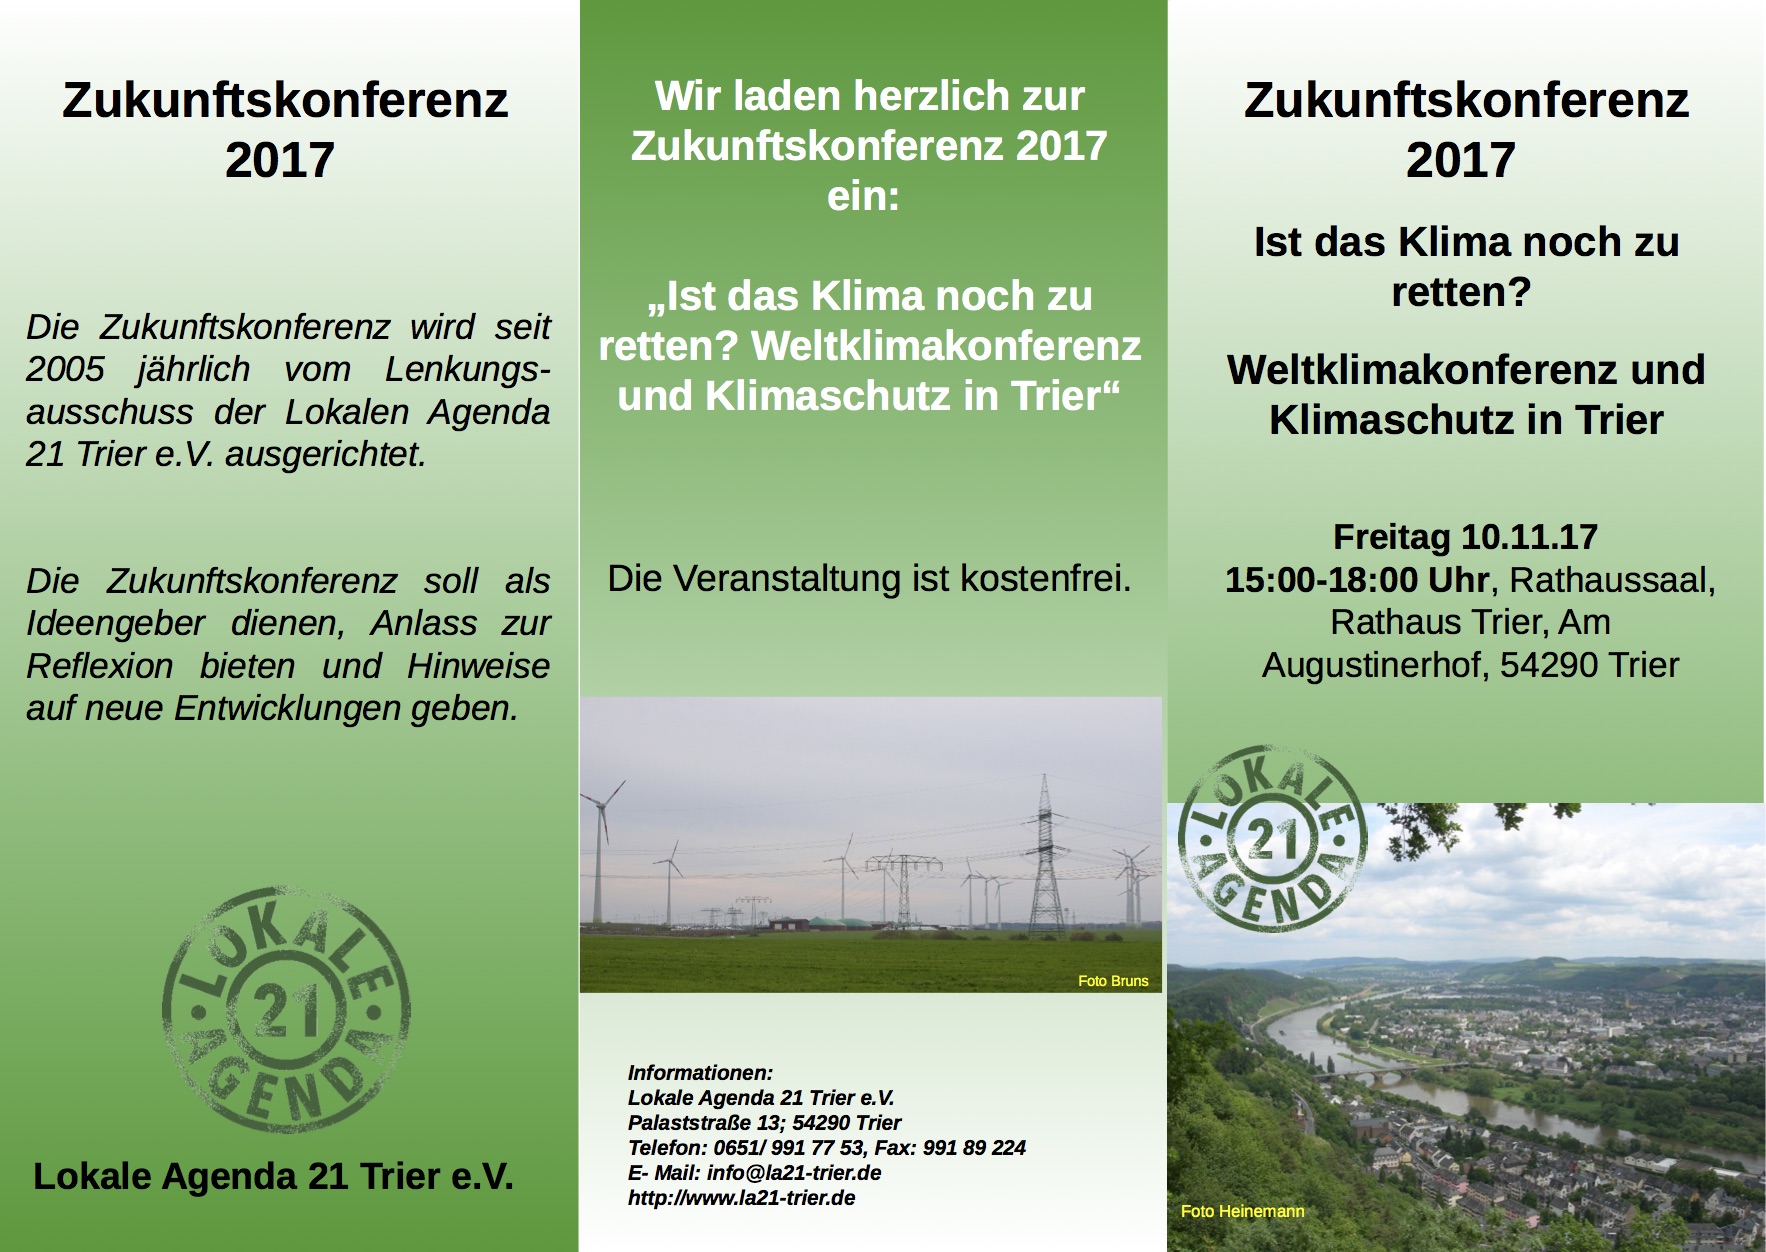 Zukunftskonferenz zum Klimawandel in Trier